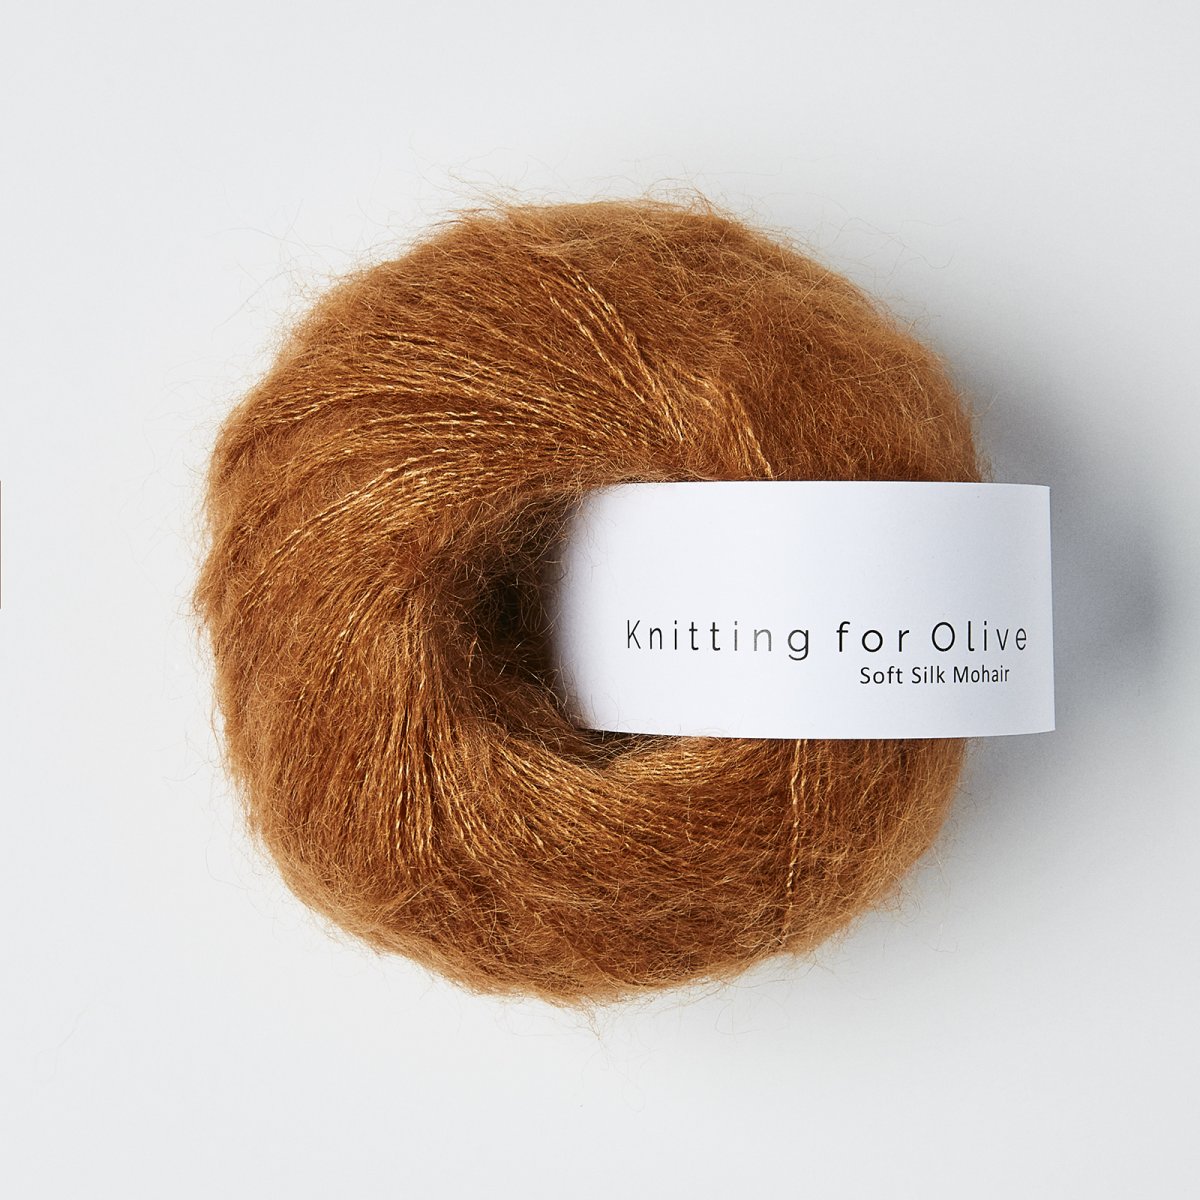 Knitting for Olive, Silk Mohair - Kobber - Knitting for Olive Garn Soft Silk Mohair - Knitter's Delight